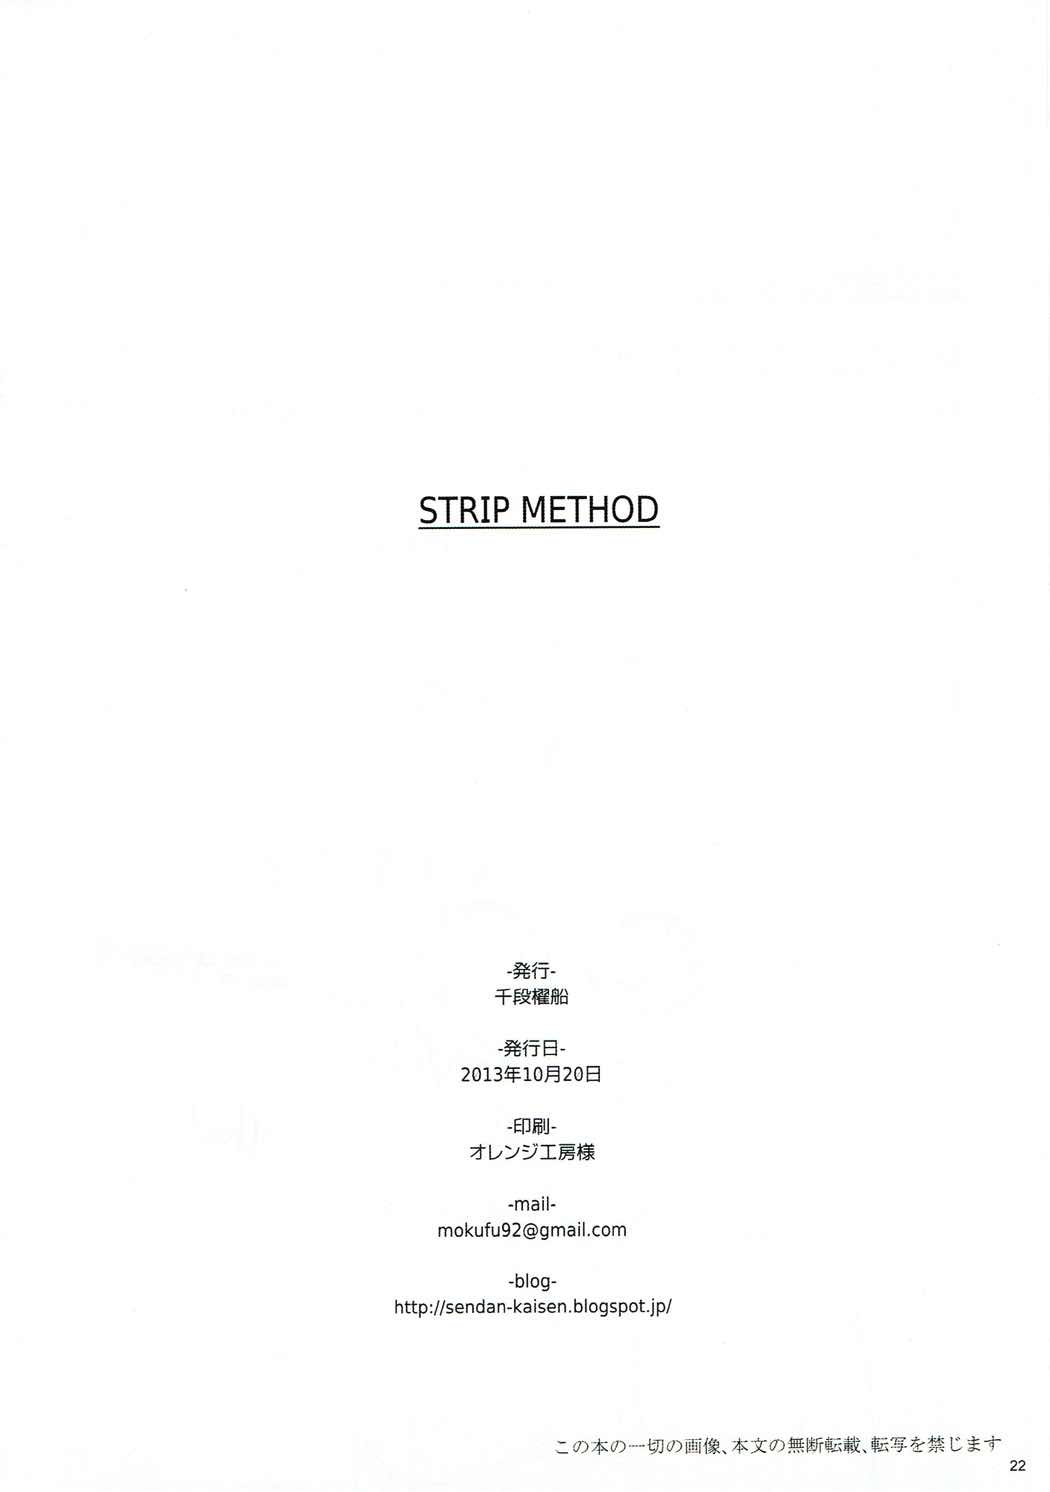 (砲雷撃戦!よーい!三戦目) [千段櫂船 (もくふう)] STRIP METHOD (艦隊これくしょん -艦これ-)